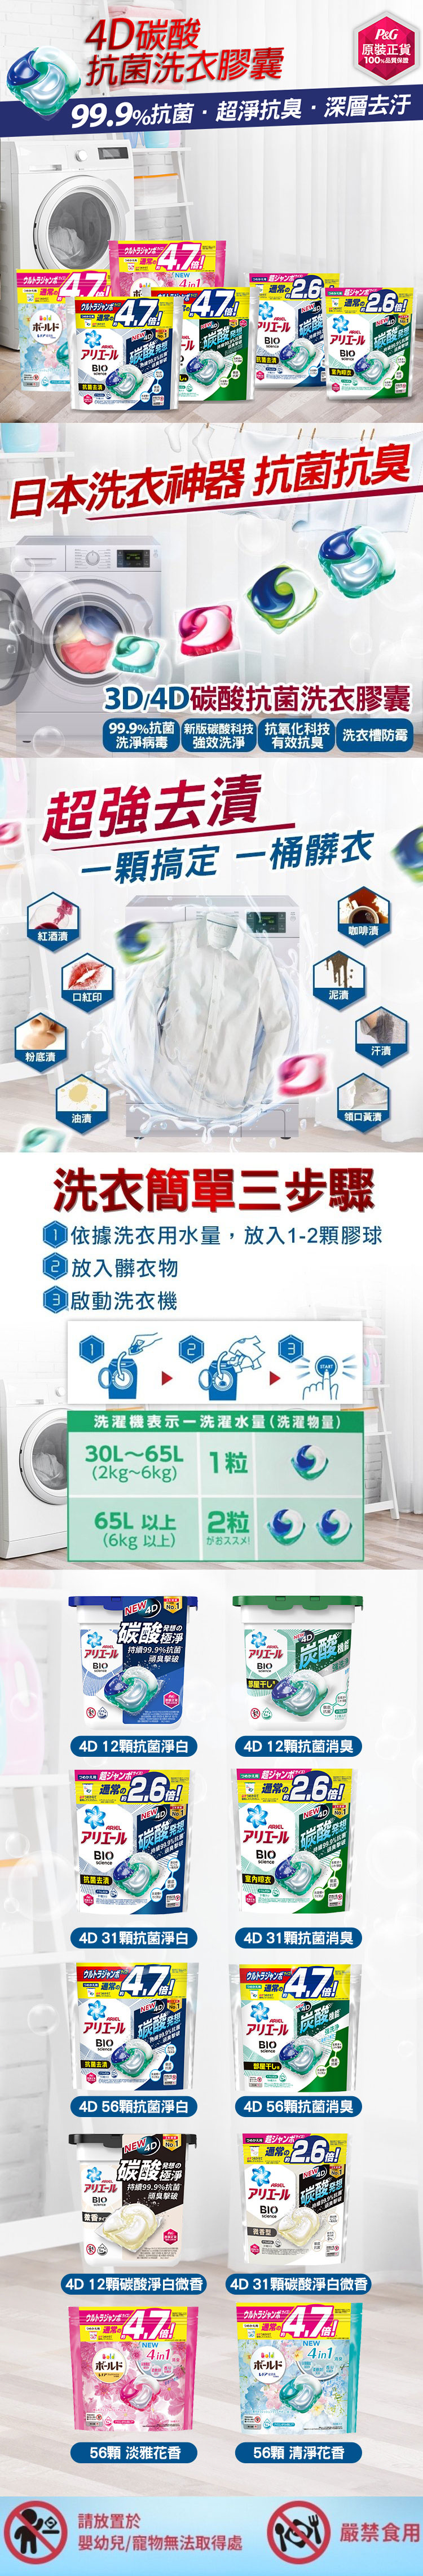 【P&G寶僑】ARIEL 洗衣球/洗衣膠球補充包